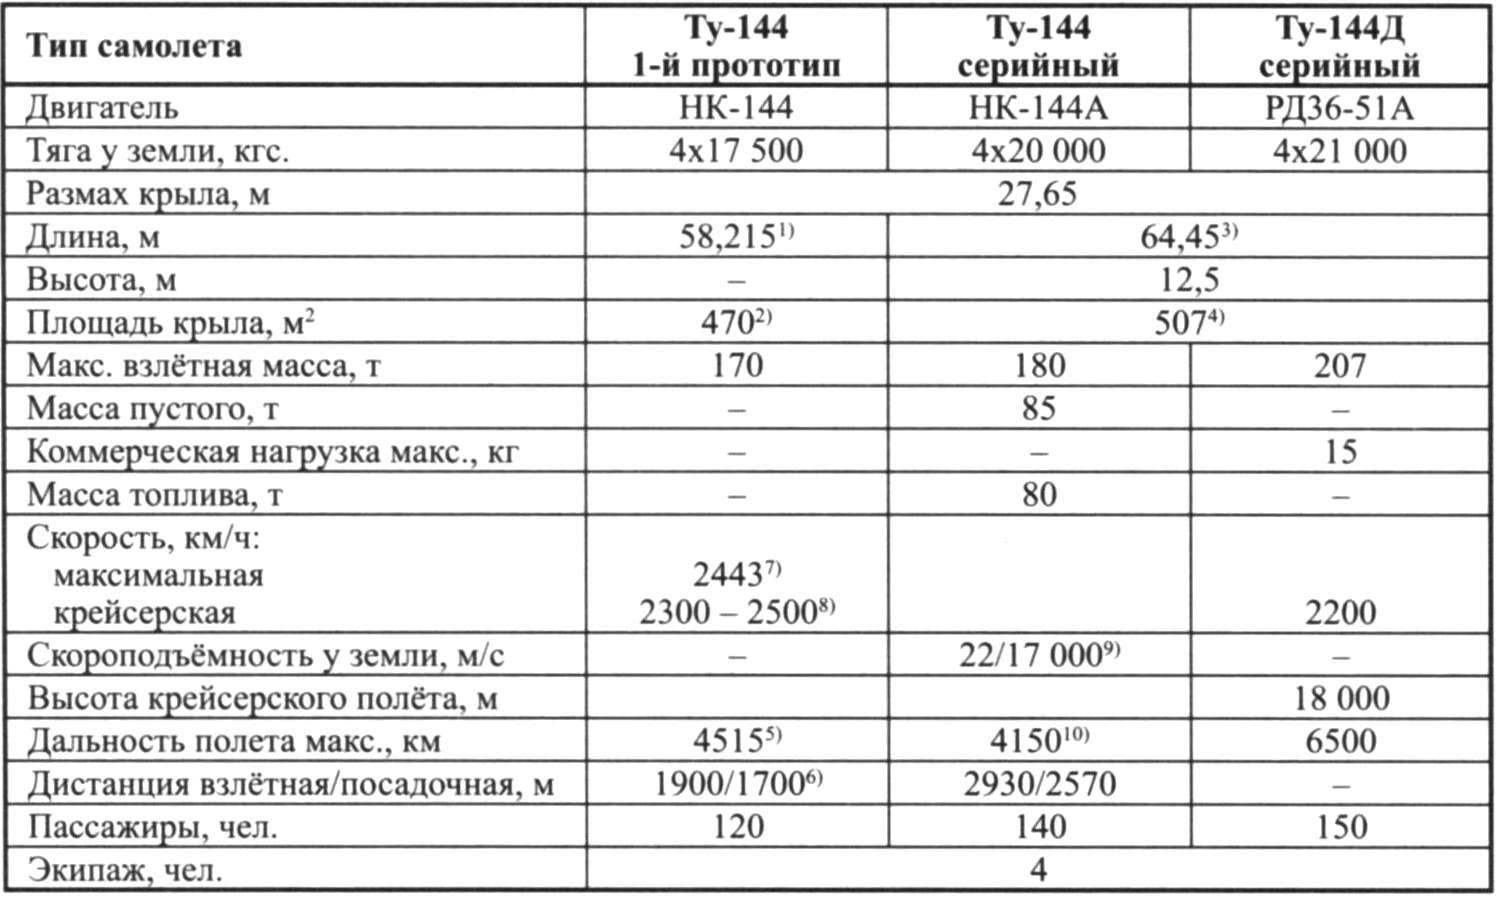 Основные данные самолётов семейства Ту-144